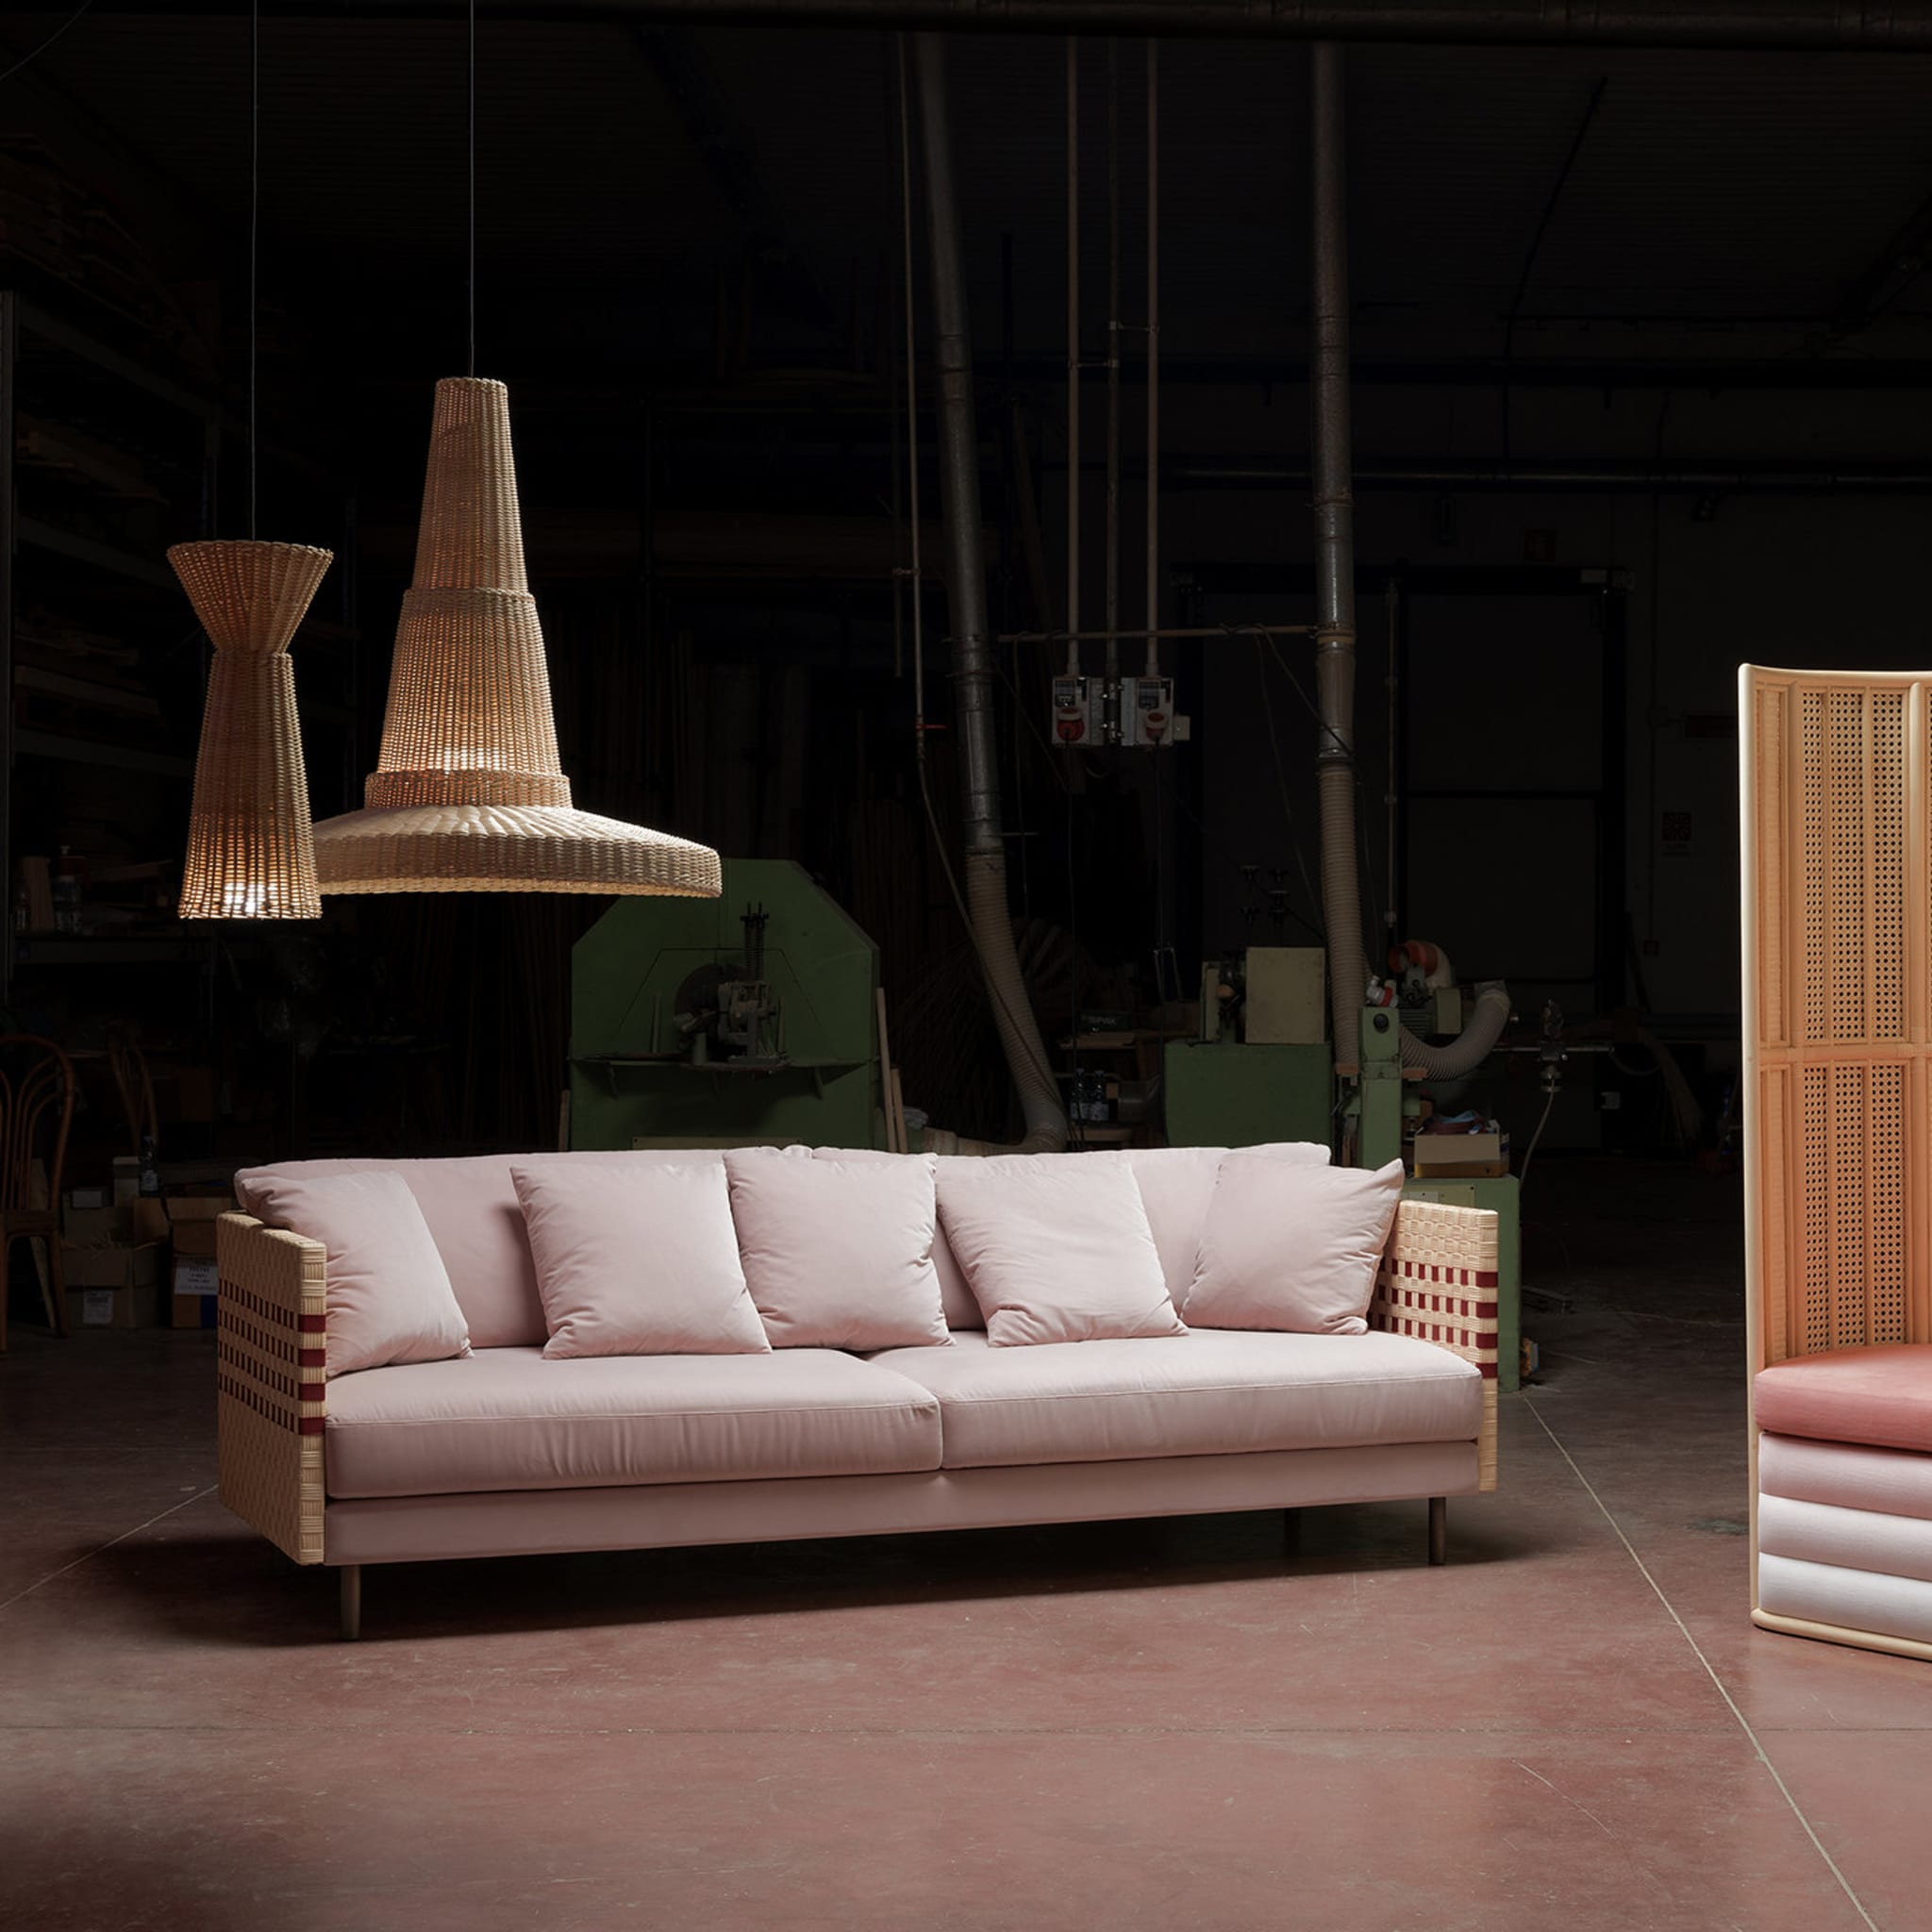 Milli Sofa by Angeletti Ruzza Design - Alternative view 3